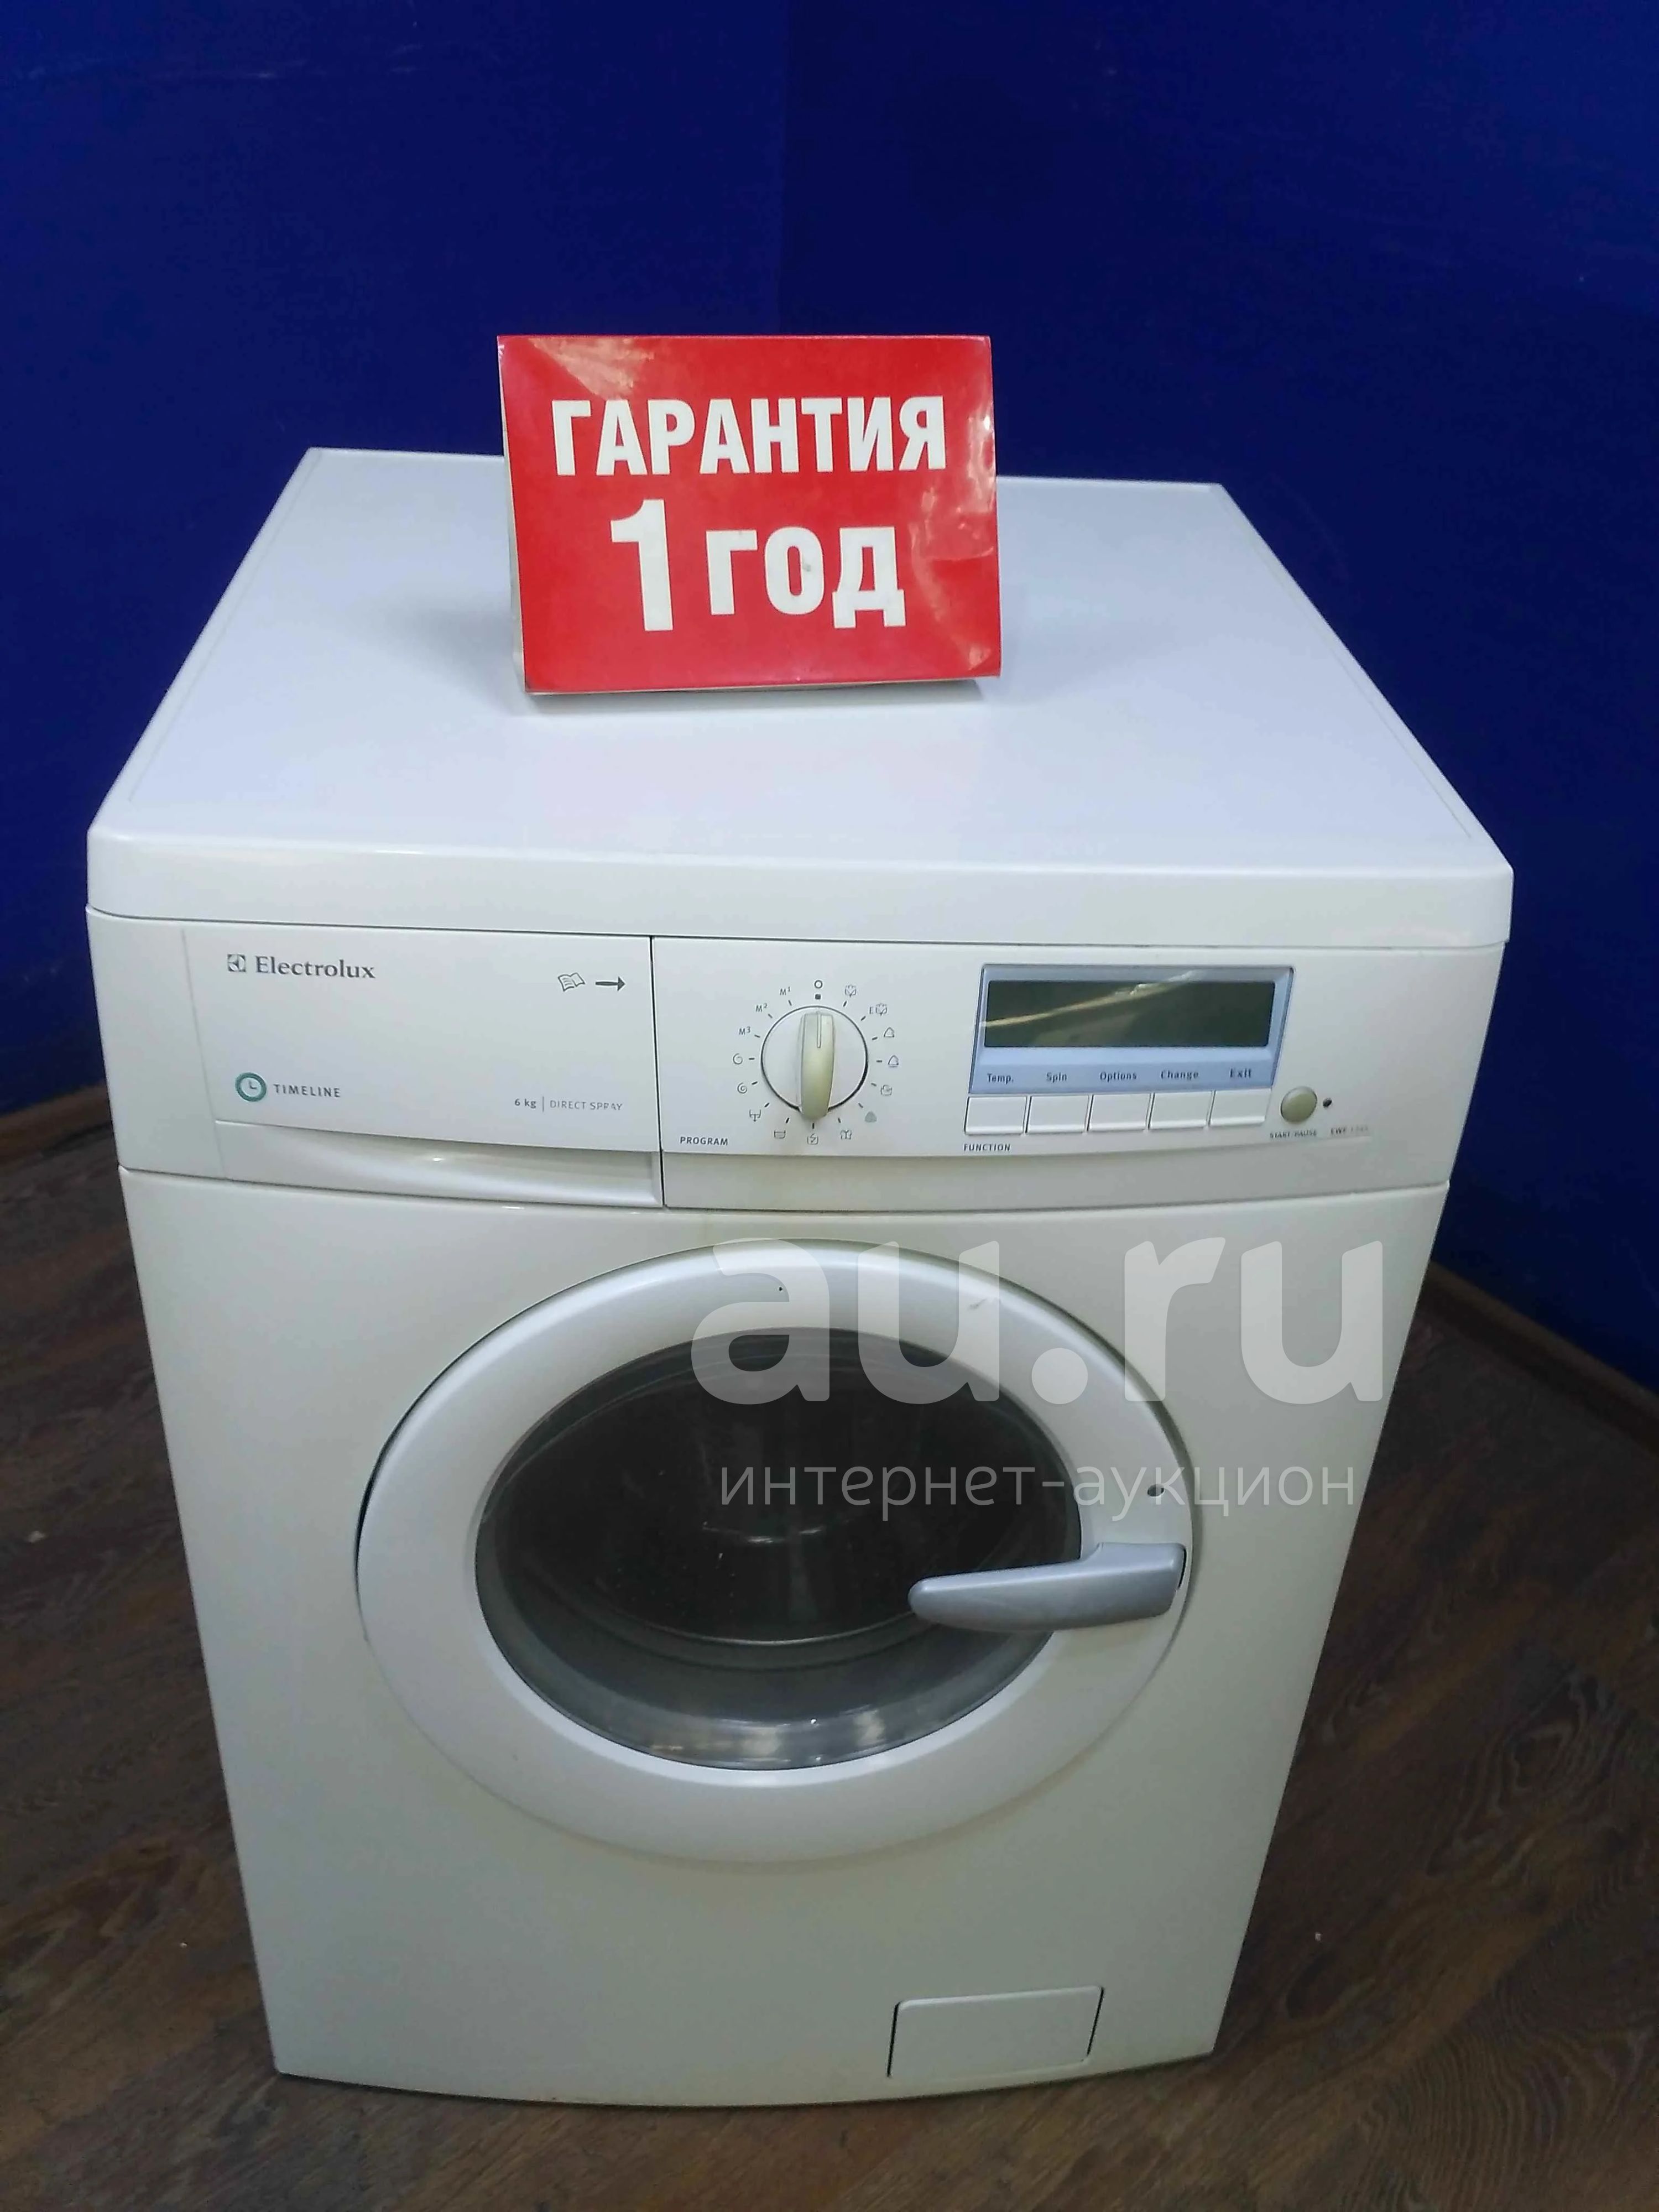 Стиральная машина electrolux ewf 1245 (11065892) — купить в Красноярске.  Стиральные машины на интернет-аукционе Au.ru